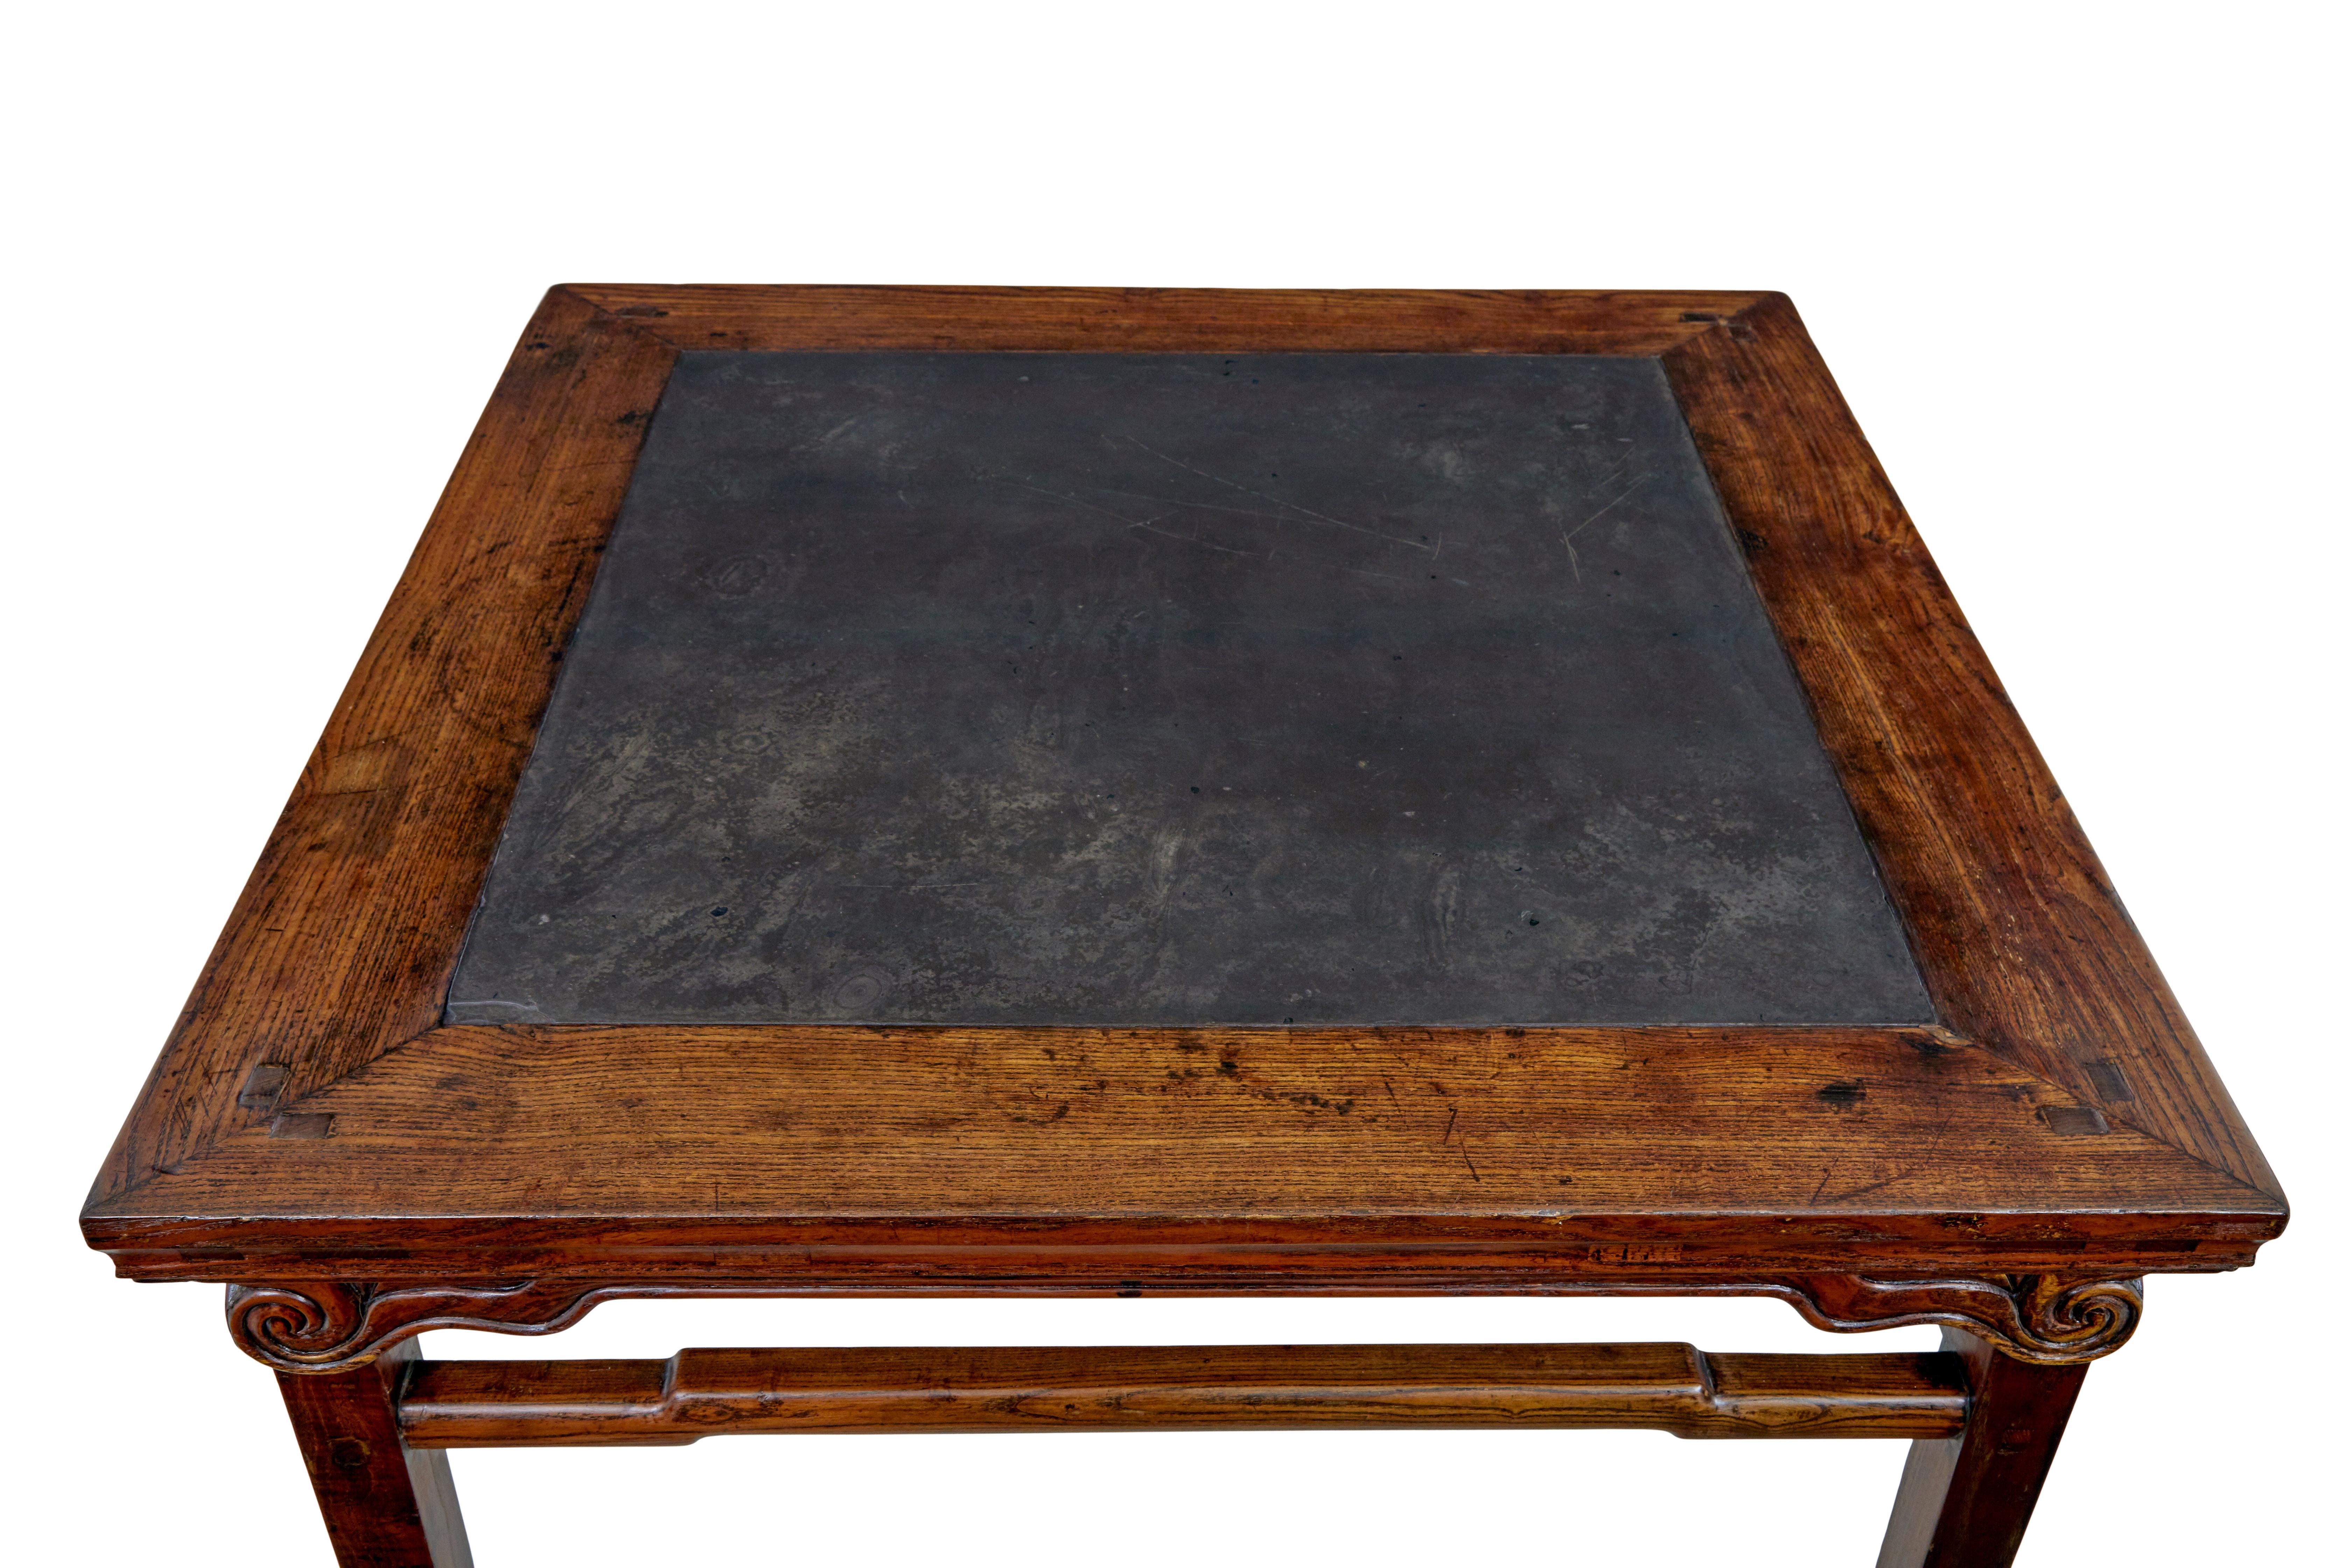 Großer chinesischer Hartholztisch mit Marmoreinlage aus dem 19. Jahrhundert, um 1880.

Chinesischer Tisch aus Hartholz guter Qualität mit einer in die Platte eingelassenen dunkelgrauen Marmorplatte.  Marmor hat eine großartige Patina und eine